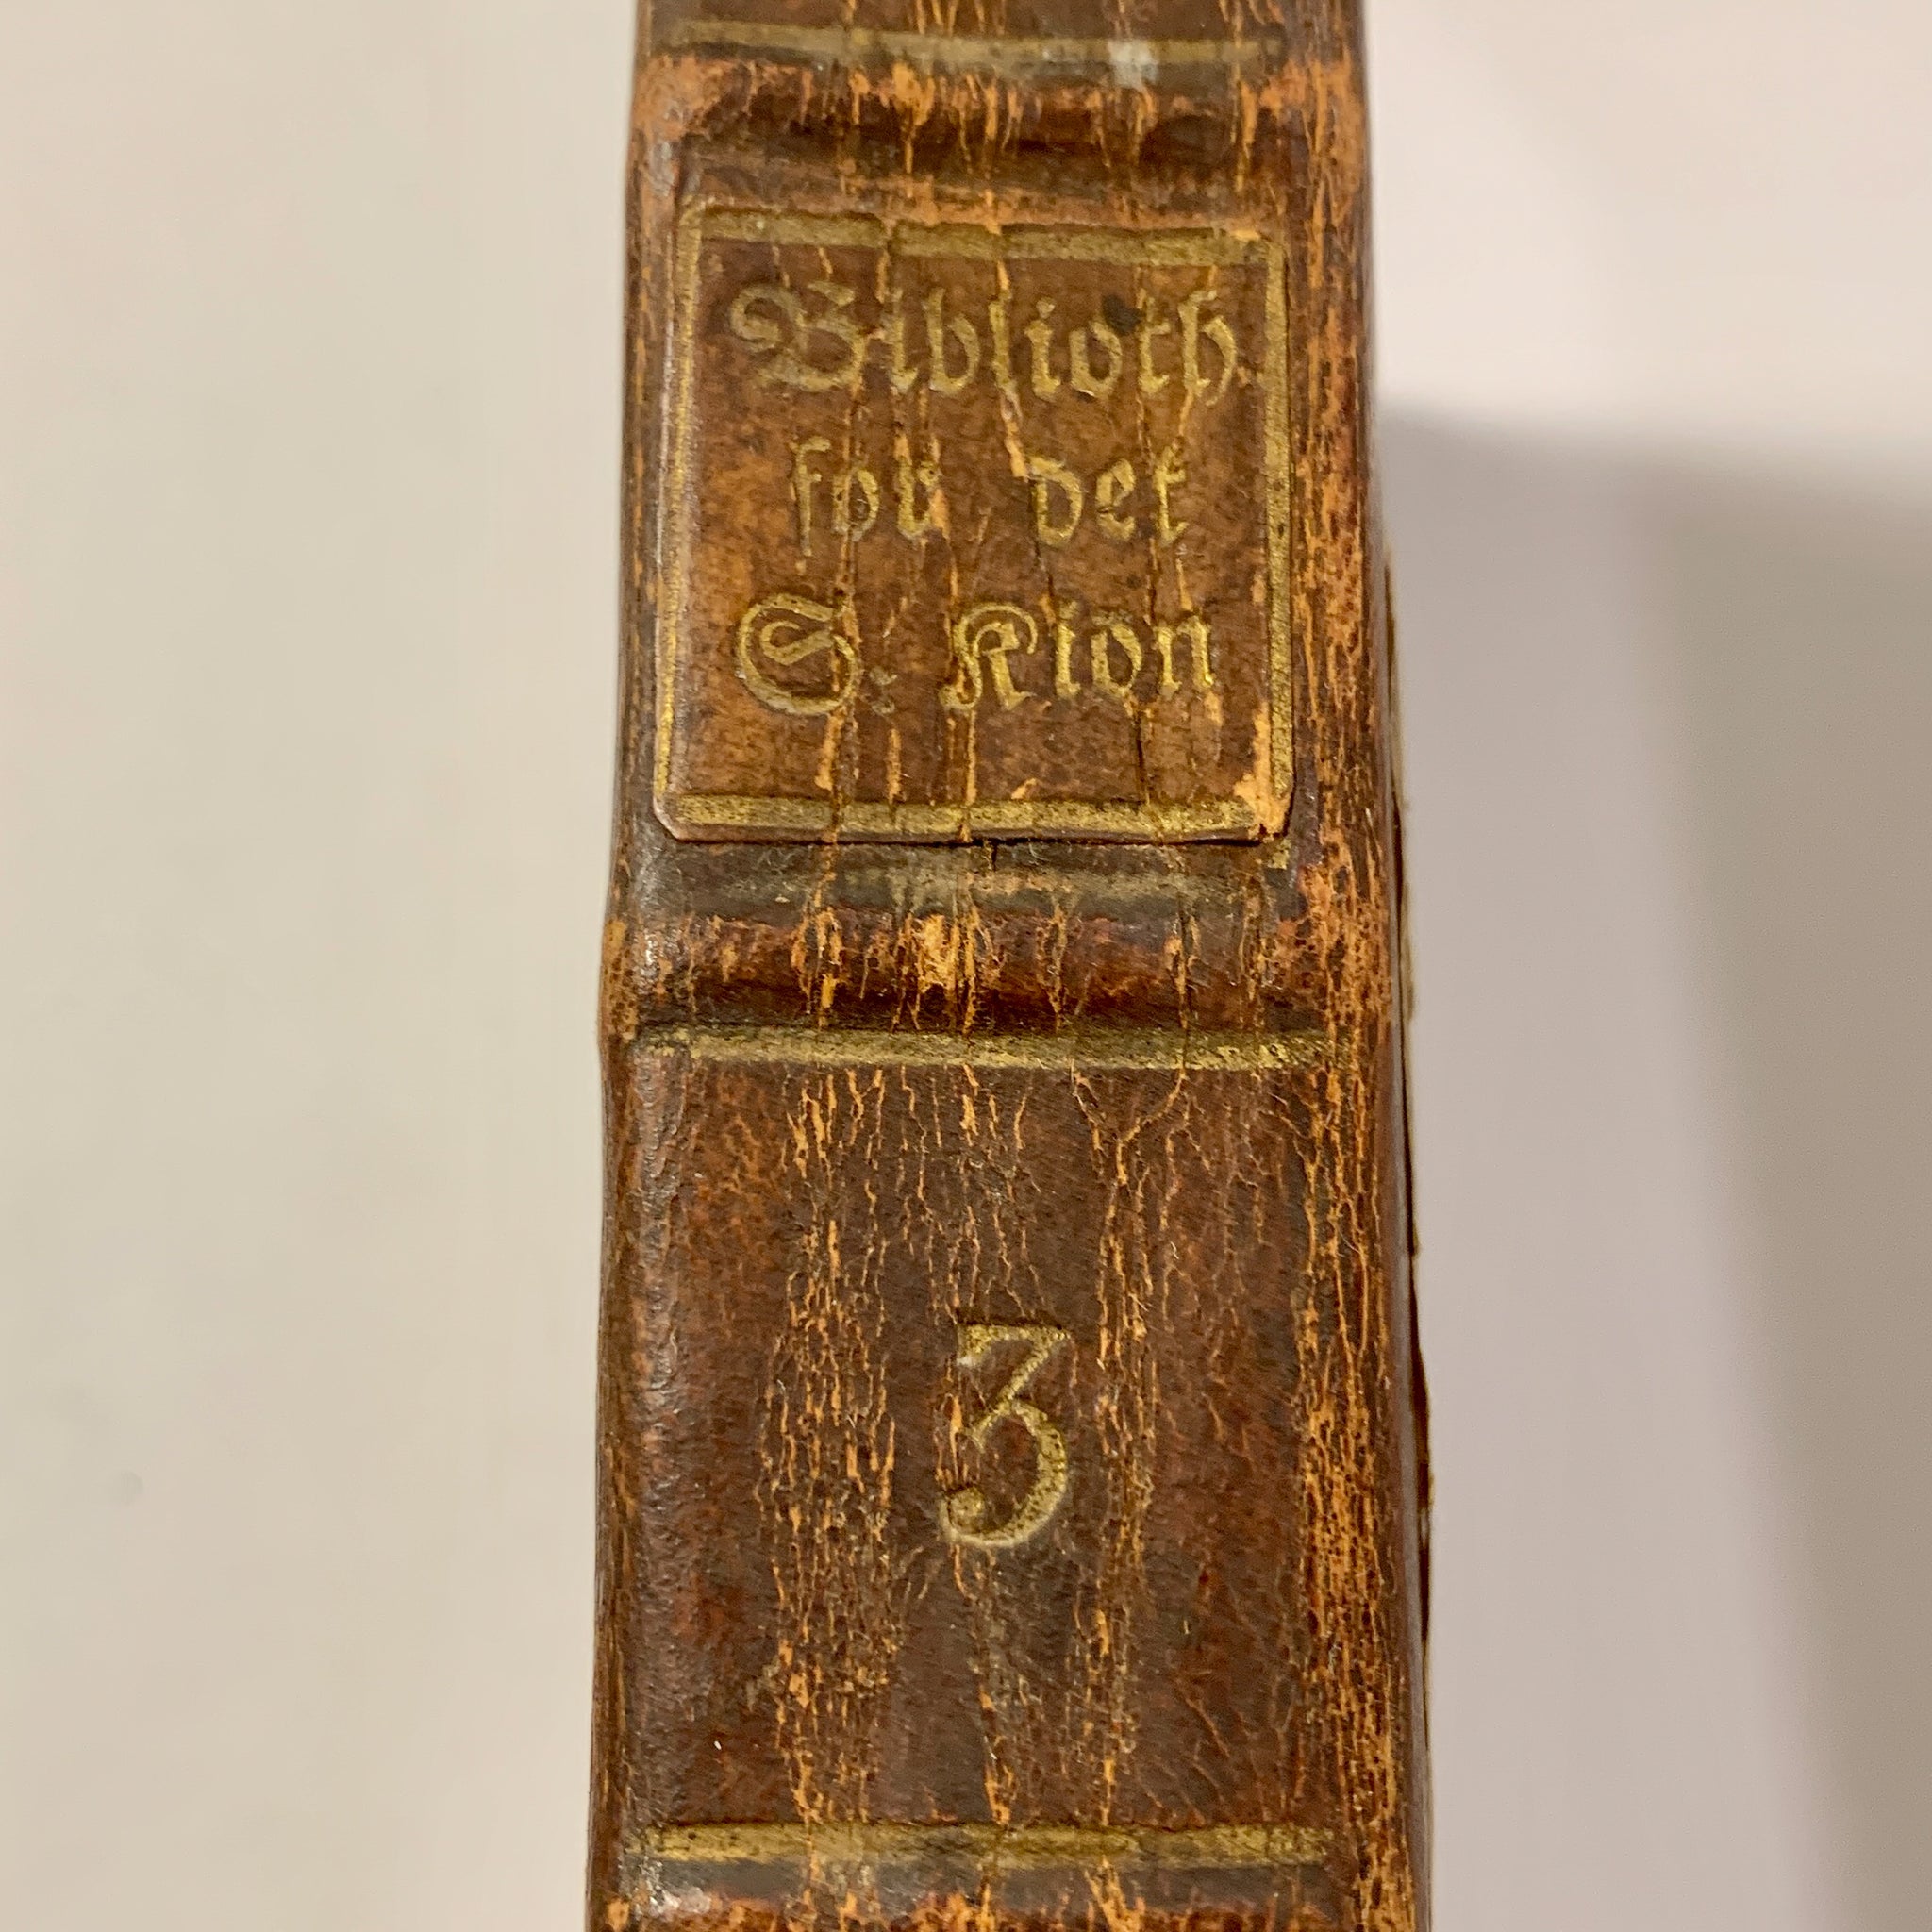 Bibliothek for det smukke kiøn 3.Bind. Gyldendals Forlag, 1785, 1.Udgave, 1. Oplag.